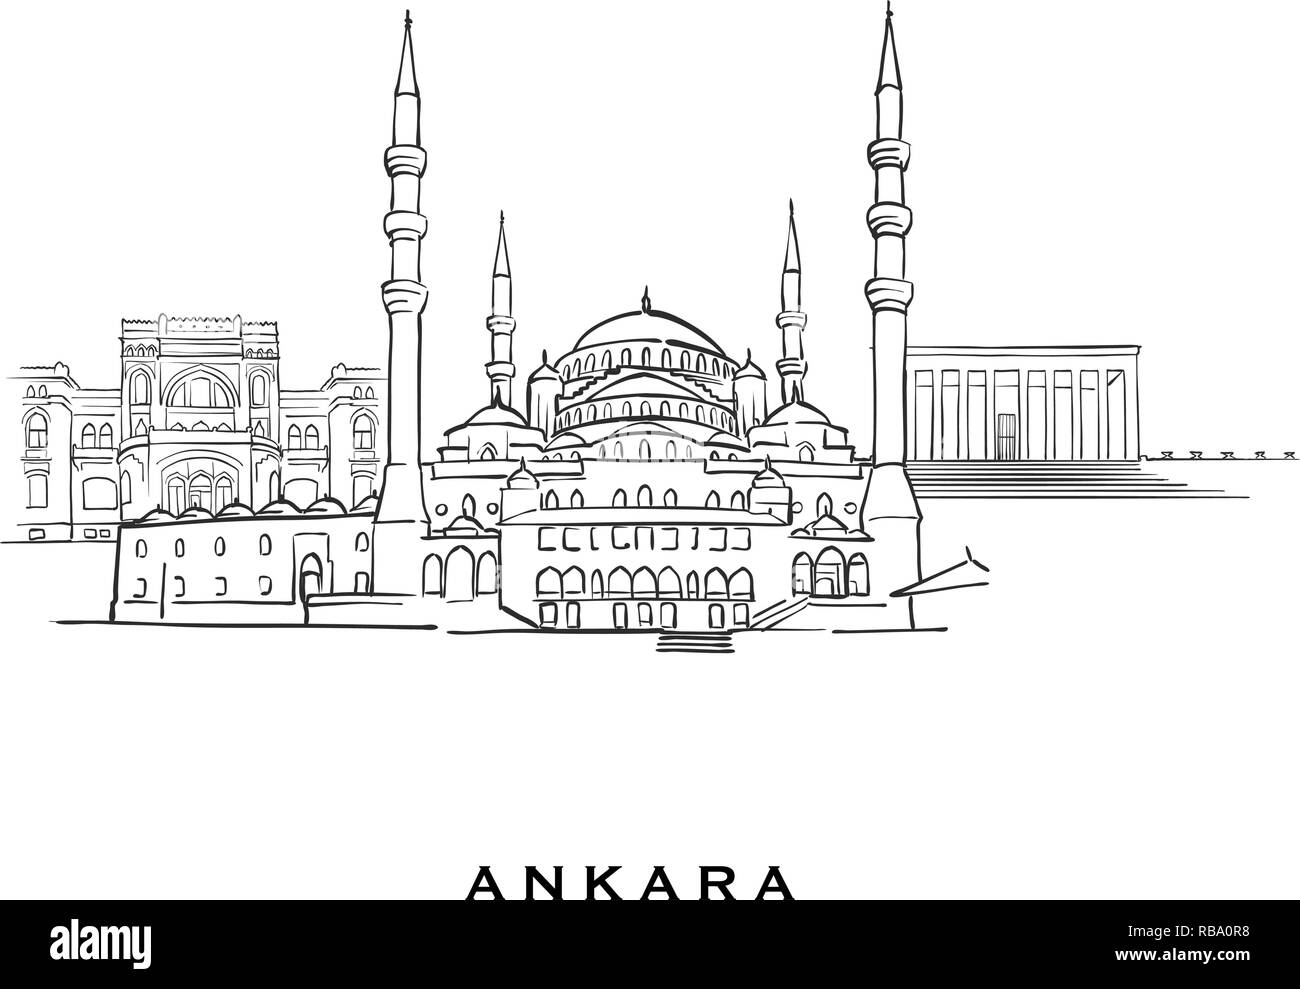 Ankara Turchia famosa architettura. Delineato lo schizzo di vettore separato su sfondo bianco. Disegni di architettura di tutte le capitali europee. Illustrazione Vettoriale